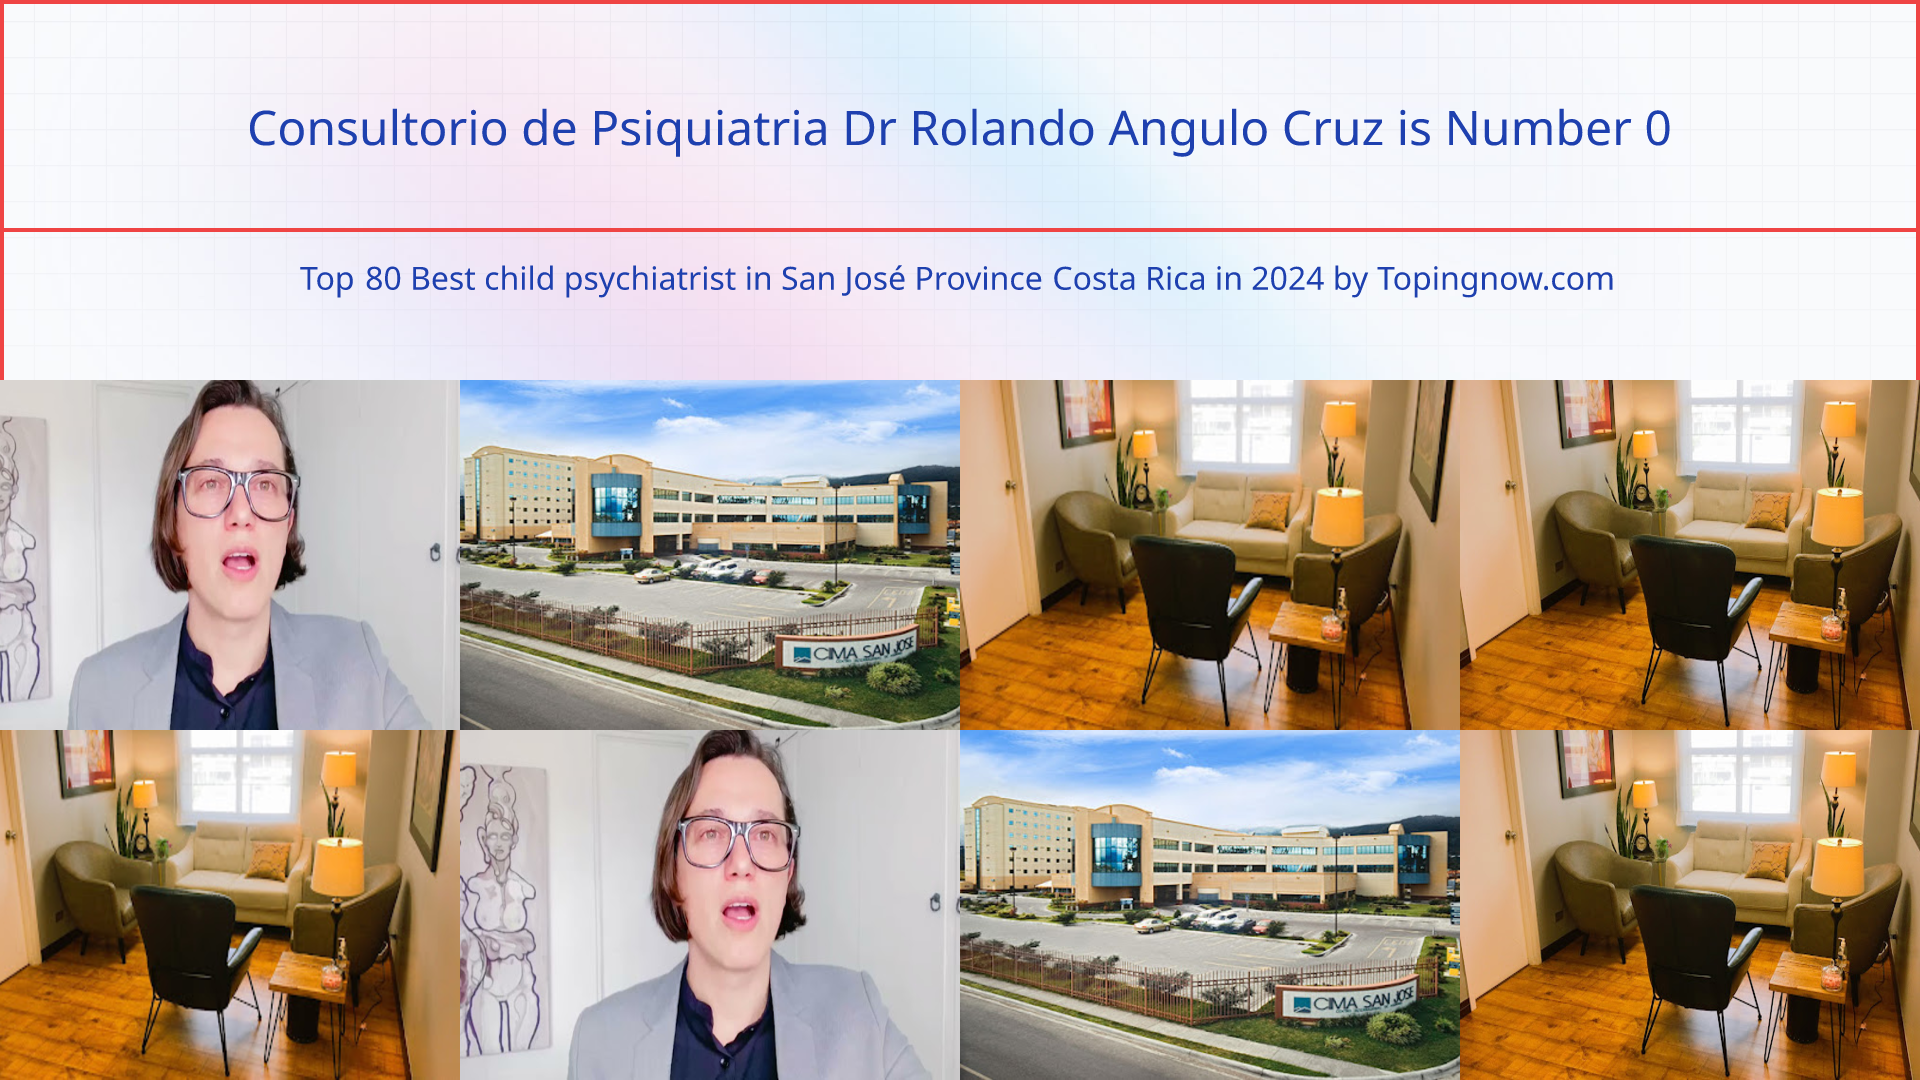 Consultorio de Psiquiatria Dr Rolando Angulo Cruz: Top 80 Best child psychiatrist in San José Province Costa Rica in 2024